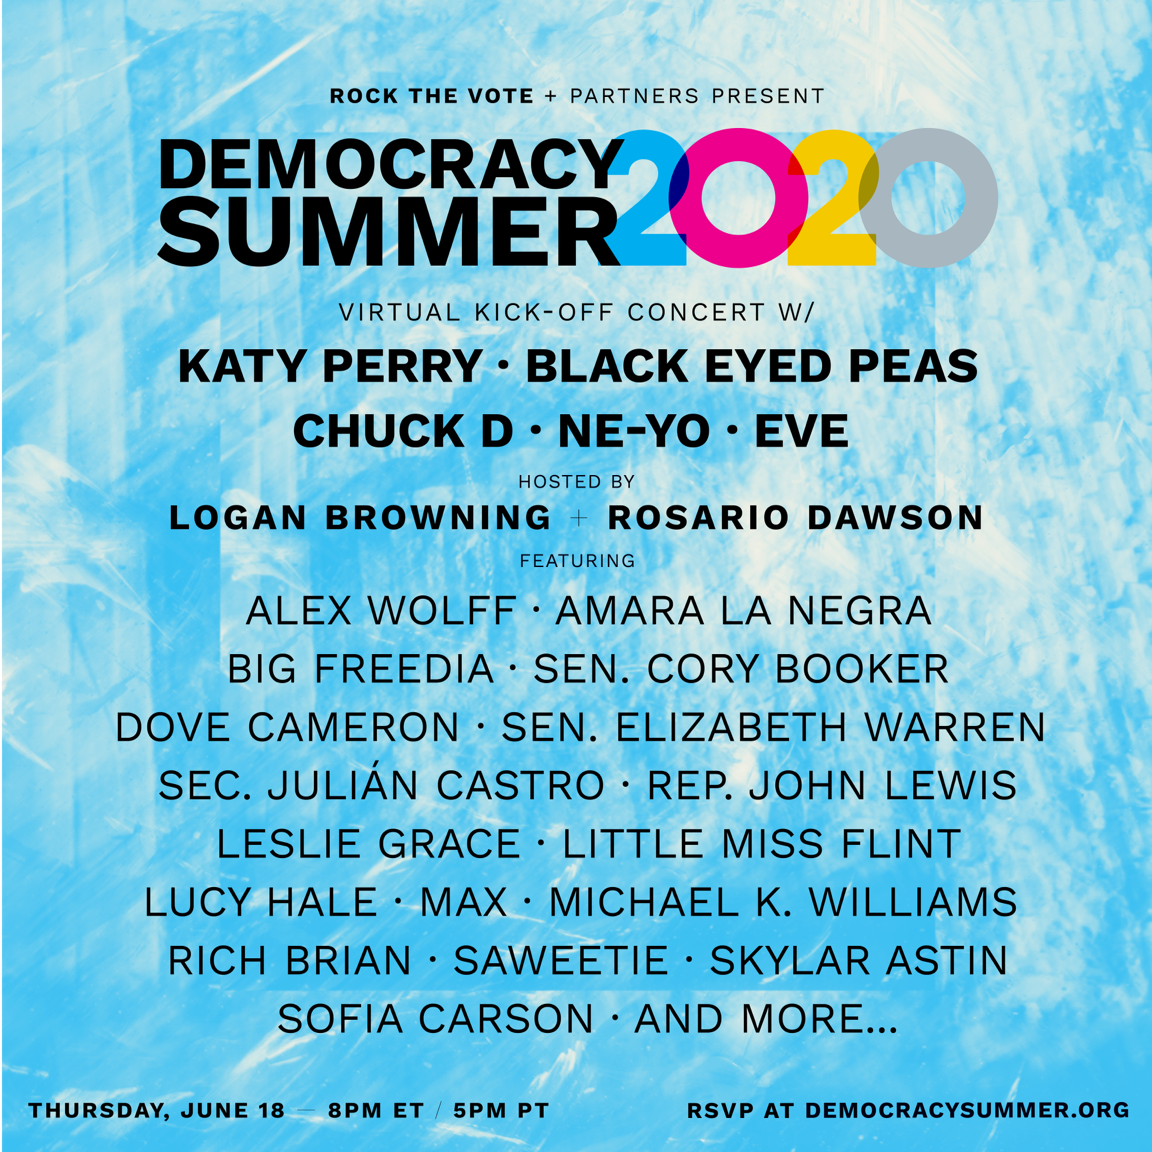 Rock The Vote #DemocracySummer2020 Kick-Off Concert